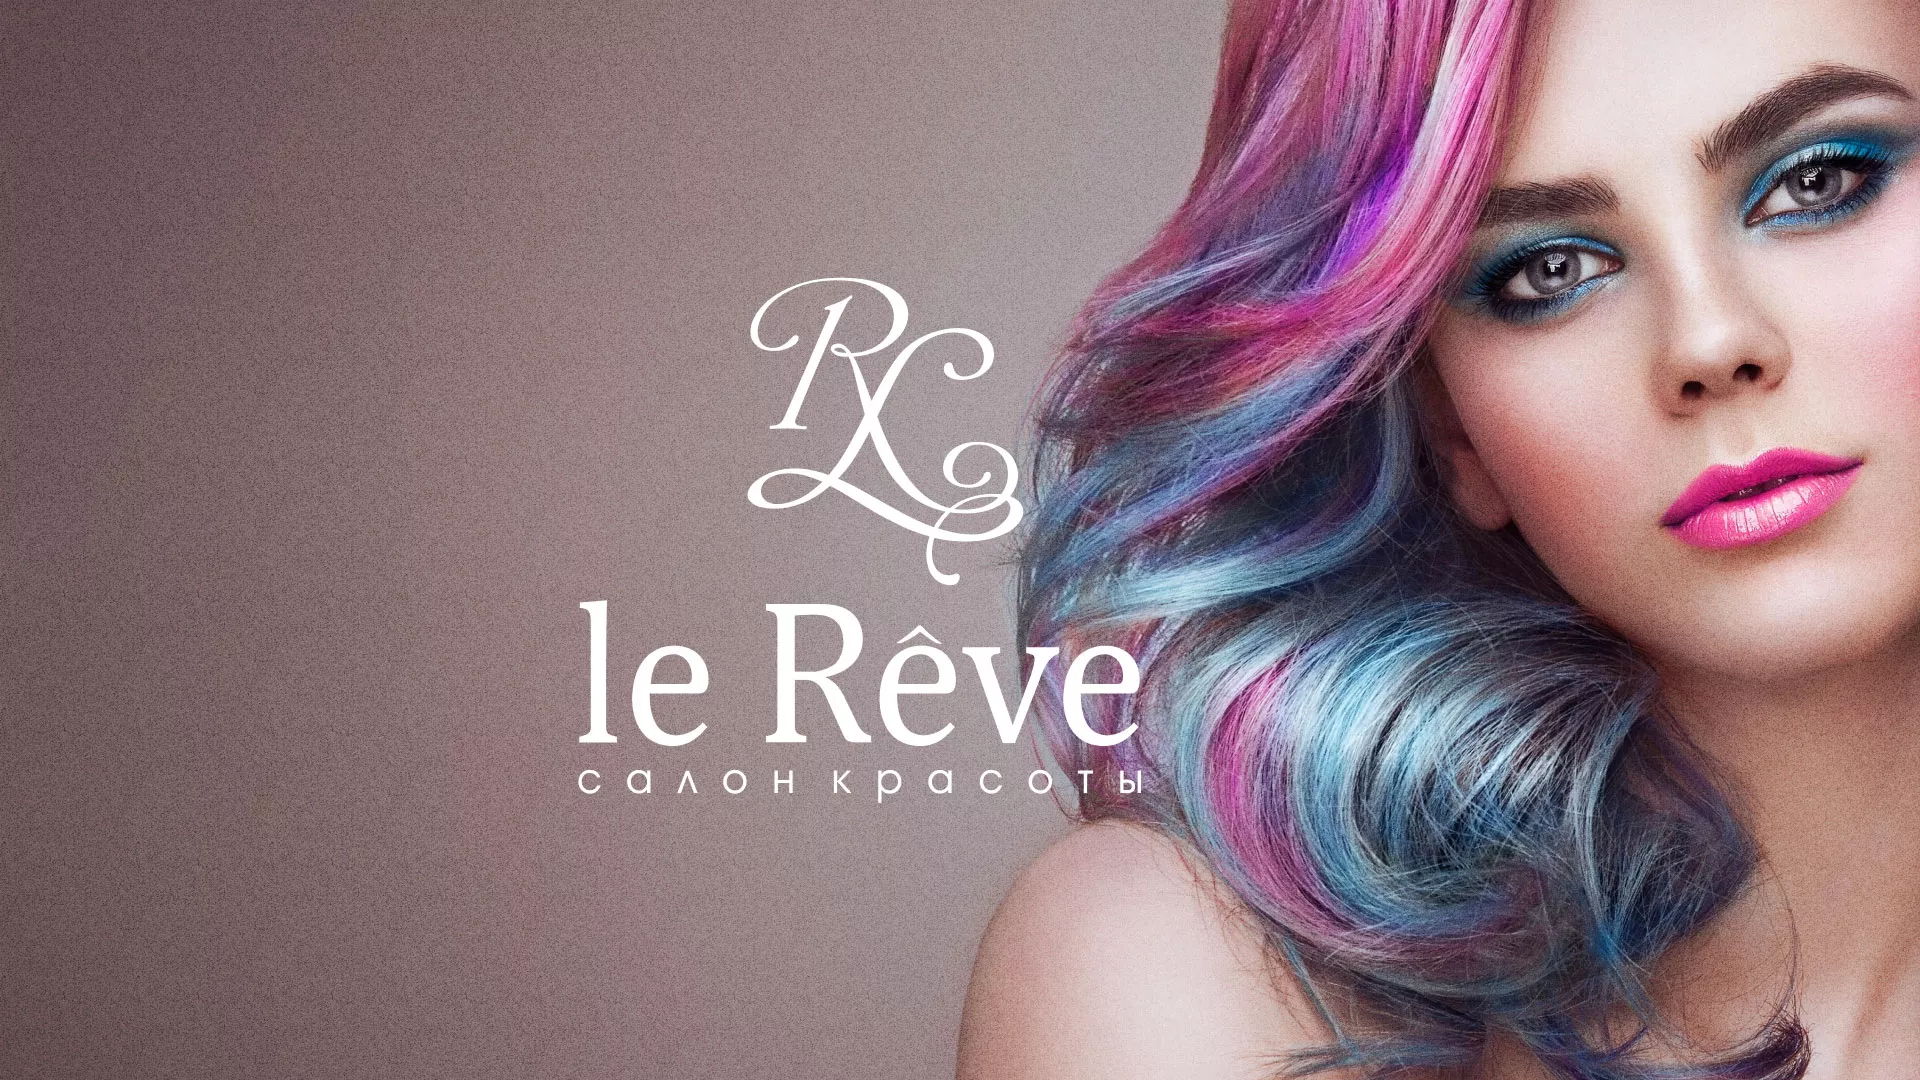 Создание сайта для салона красоты «Le Reve» в Ряжске